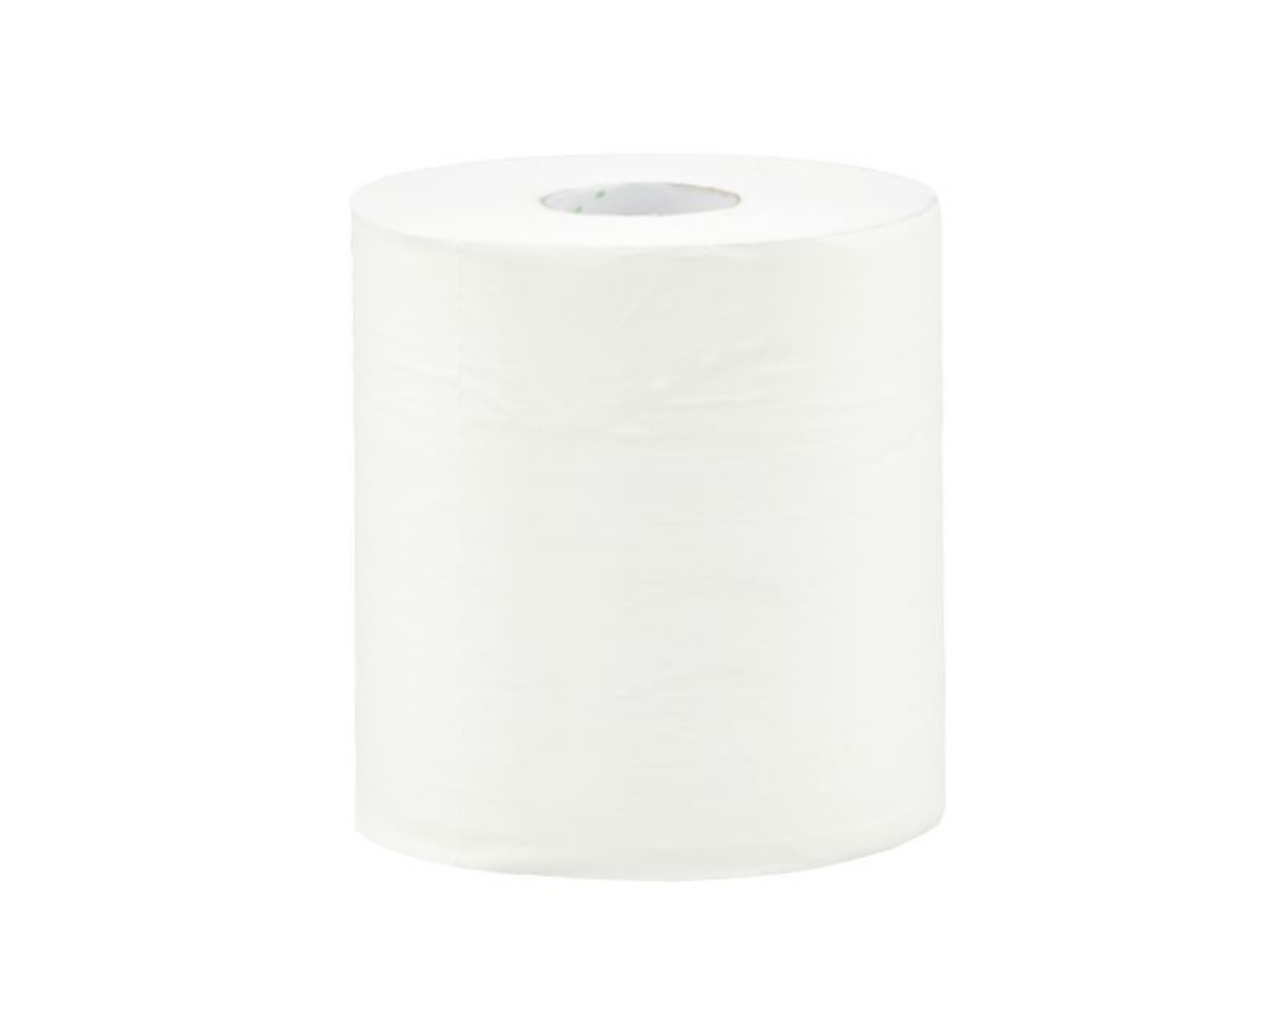 Ręczniki papierowe w roli MERIDA TOP MINI, białe, celulozowe, dwuwarstwowe, zgrzewka 6 szt.